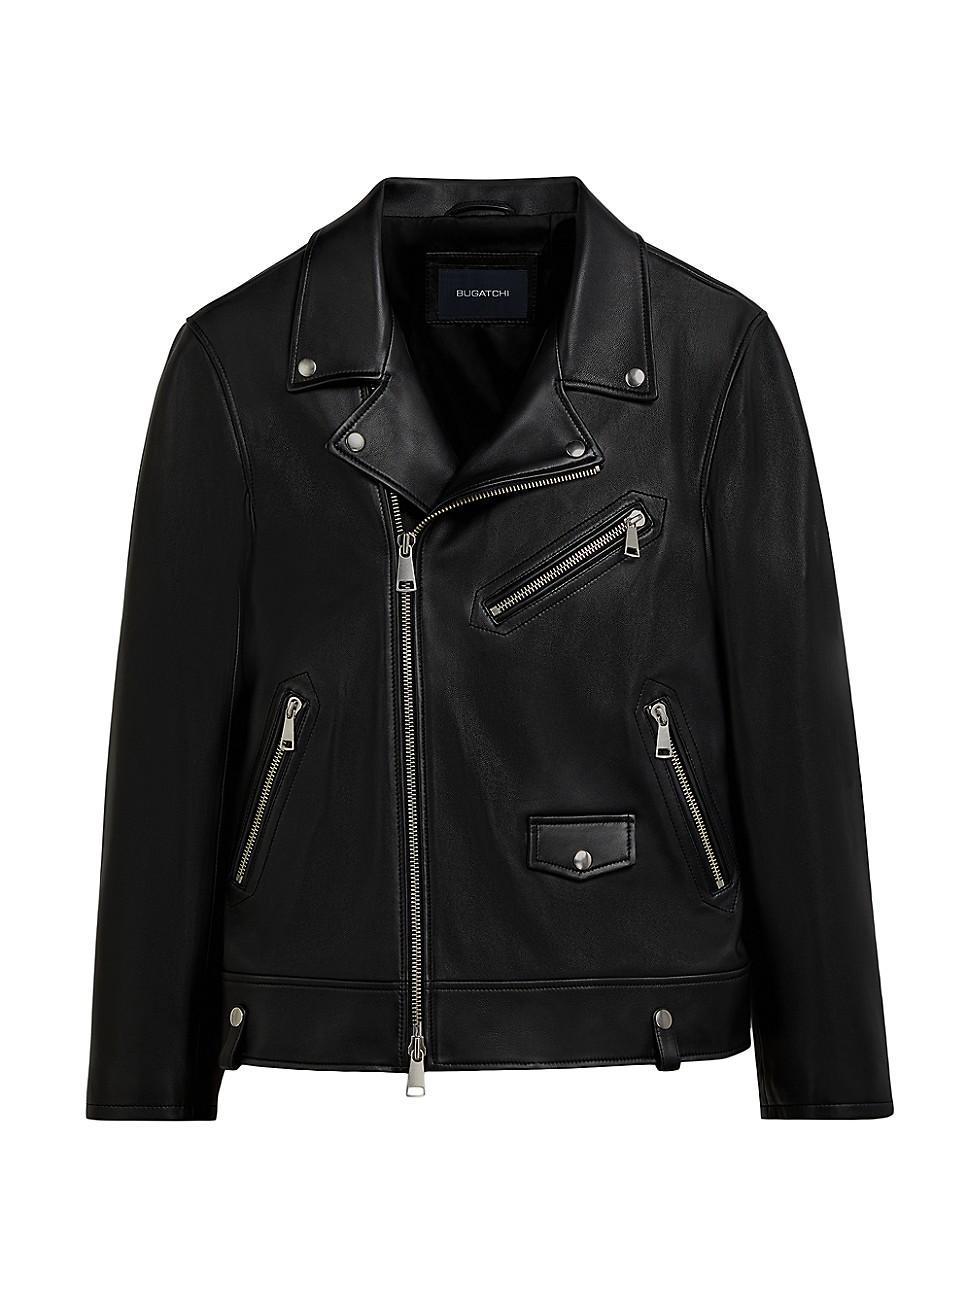 Bugatchi Full Zip Leather Biker Jacket Product Image